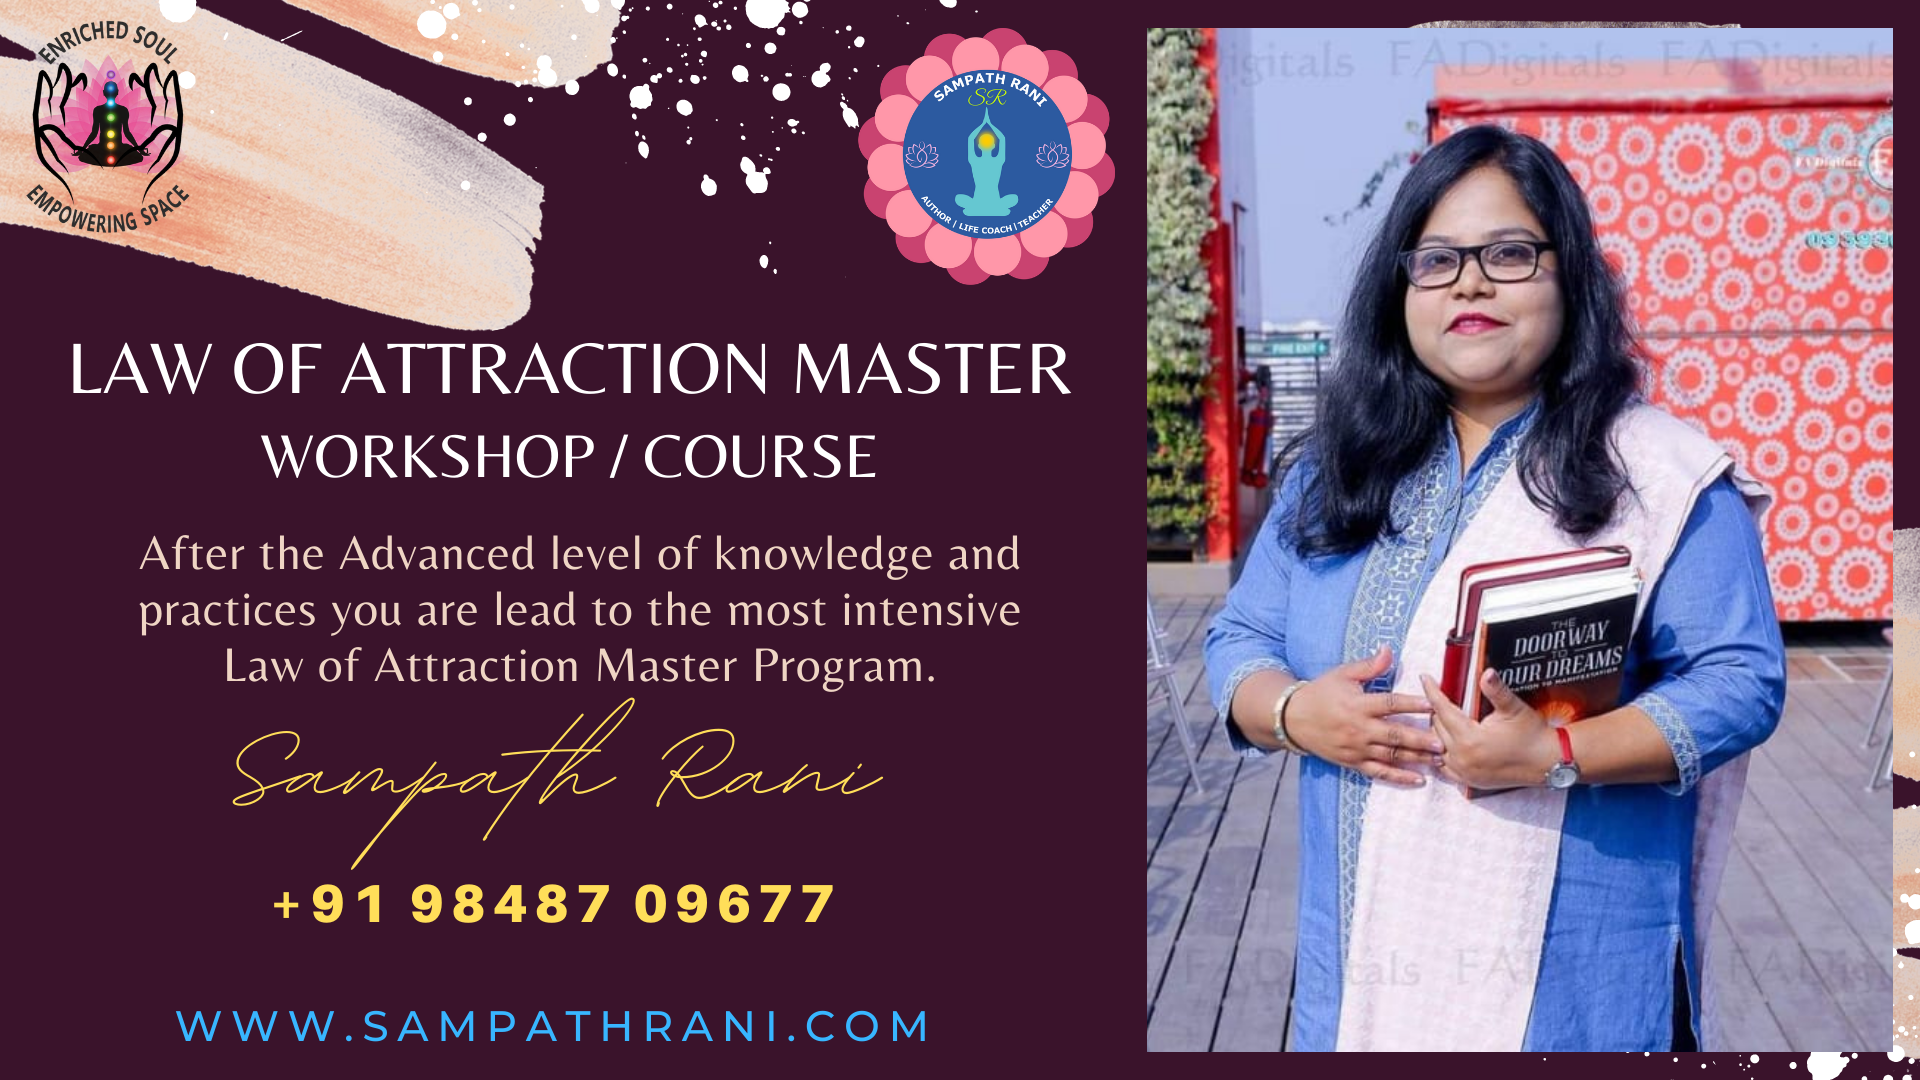 Law of Attraction Master Workshop, Course - by Sampath Rani - Vadodara